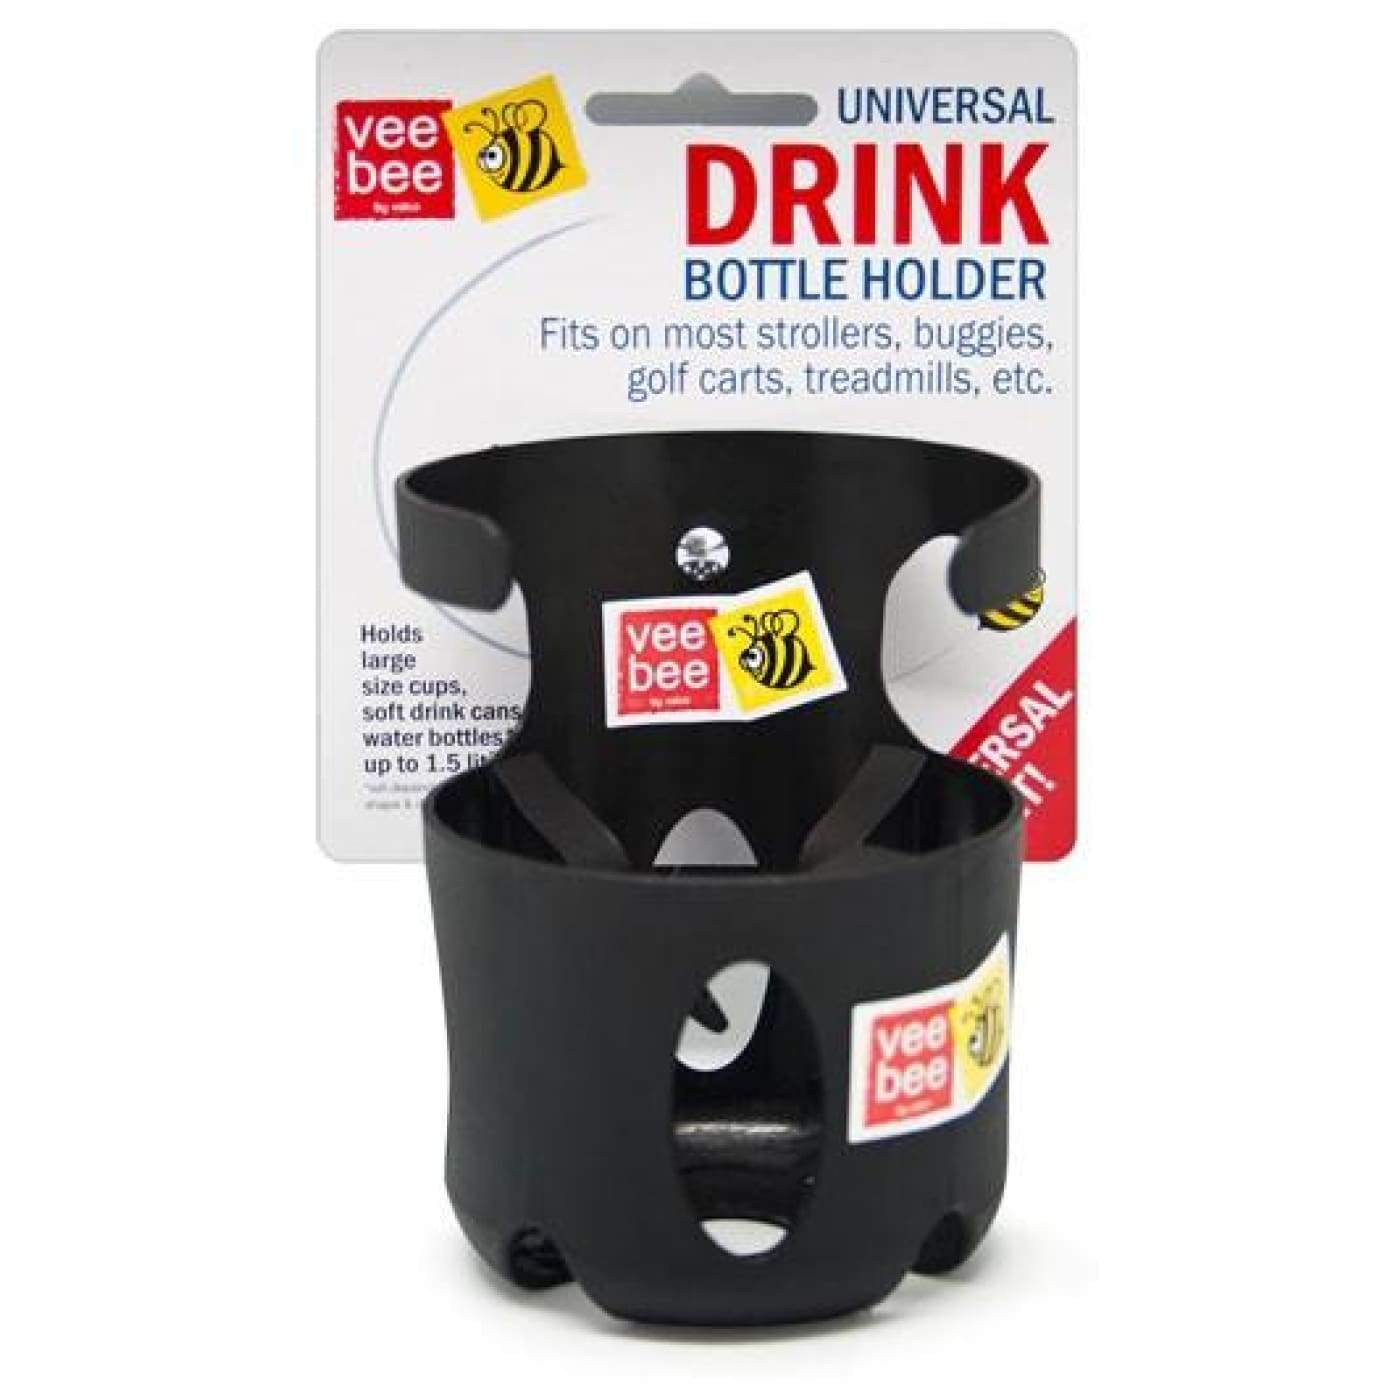 Veebee Drink Bottle Holder Universal - PRAMS & STROLLERS - CUP/PHONE HOLDERS/FANS